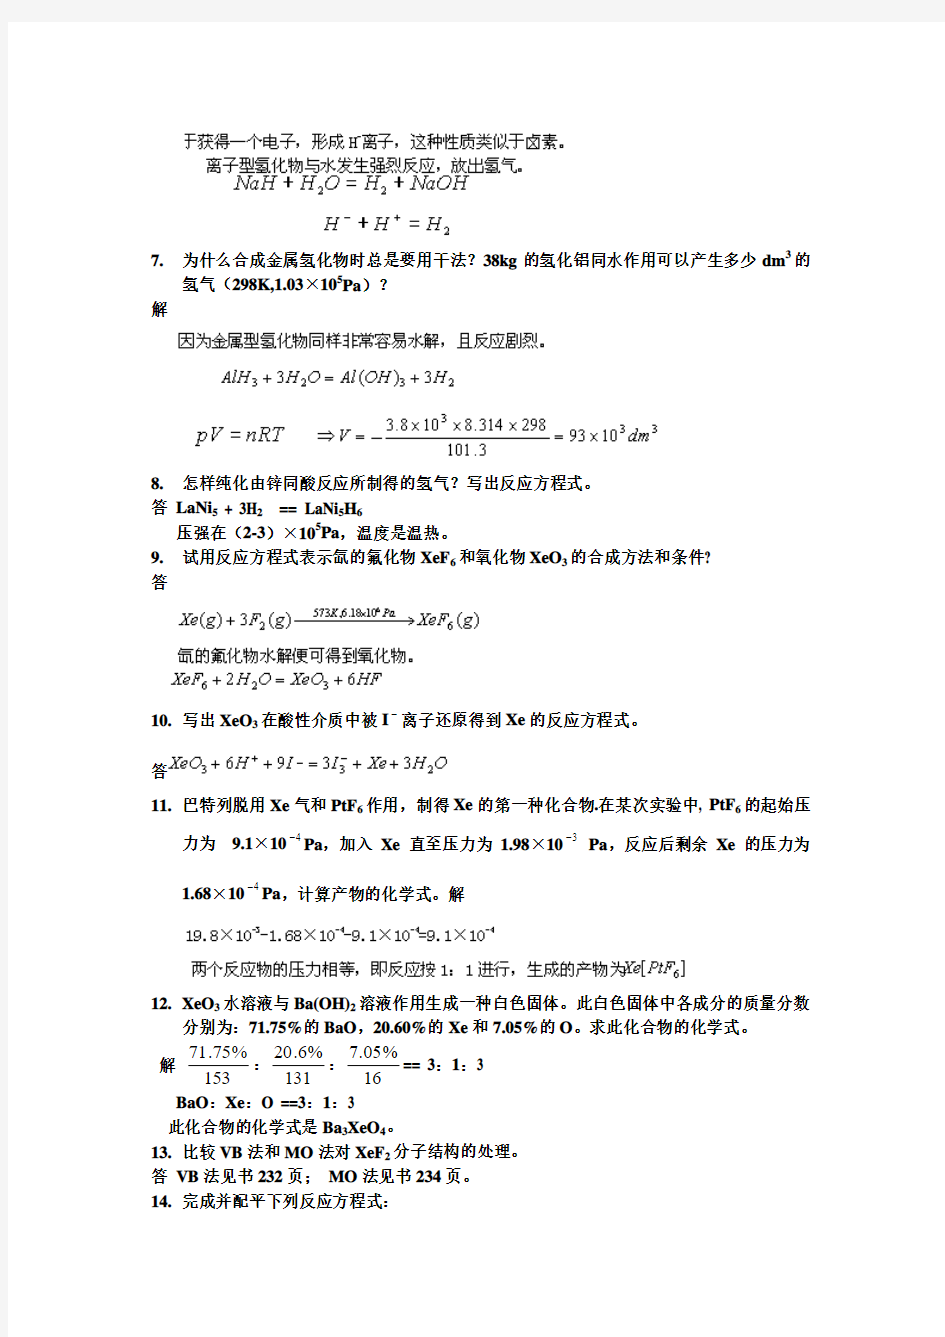 武大吉大第三版无机化学教材课后习题答案5-8